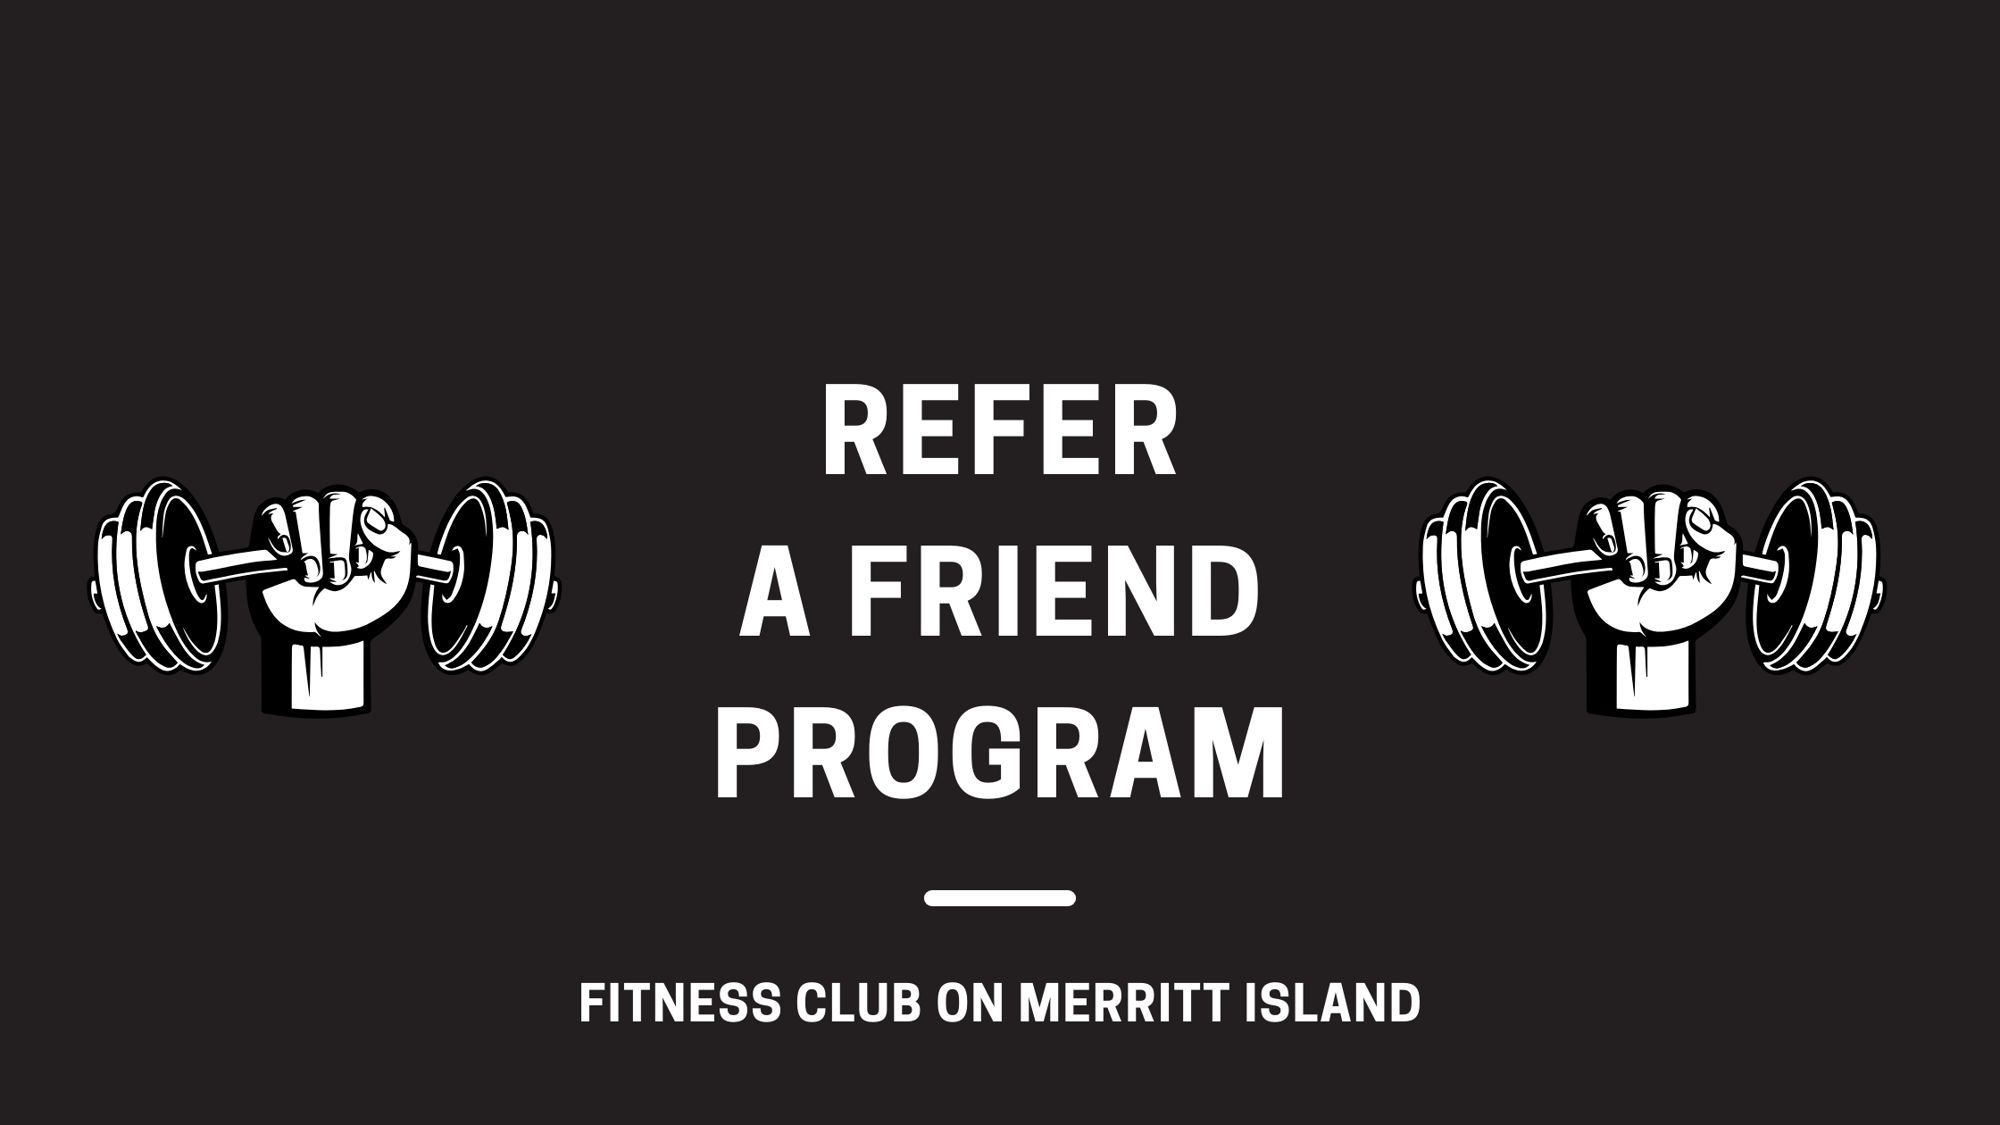 Refer a friend program at Fitness Club on Merritt Island